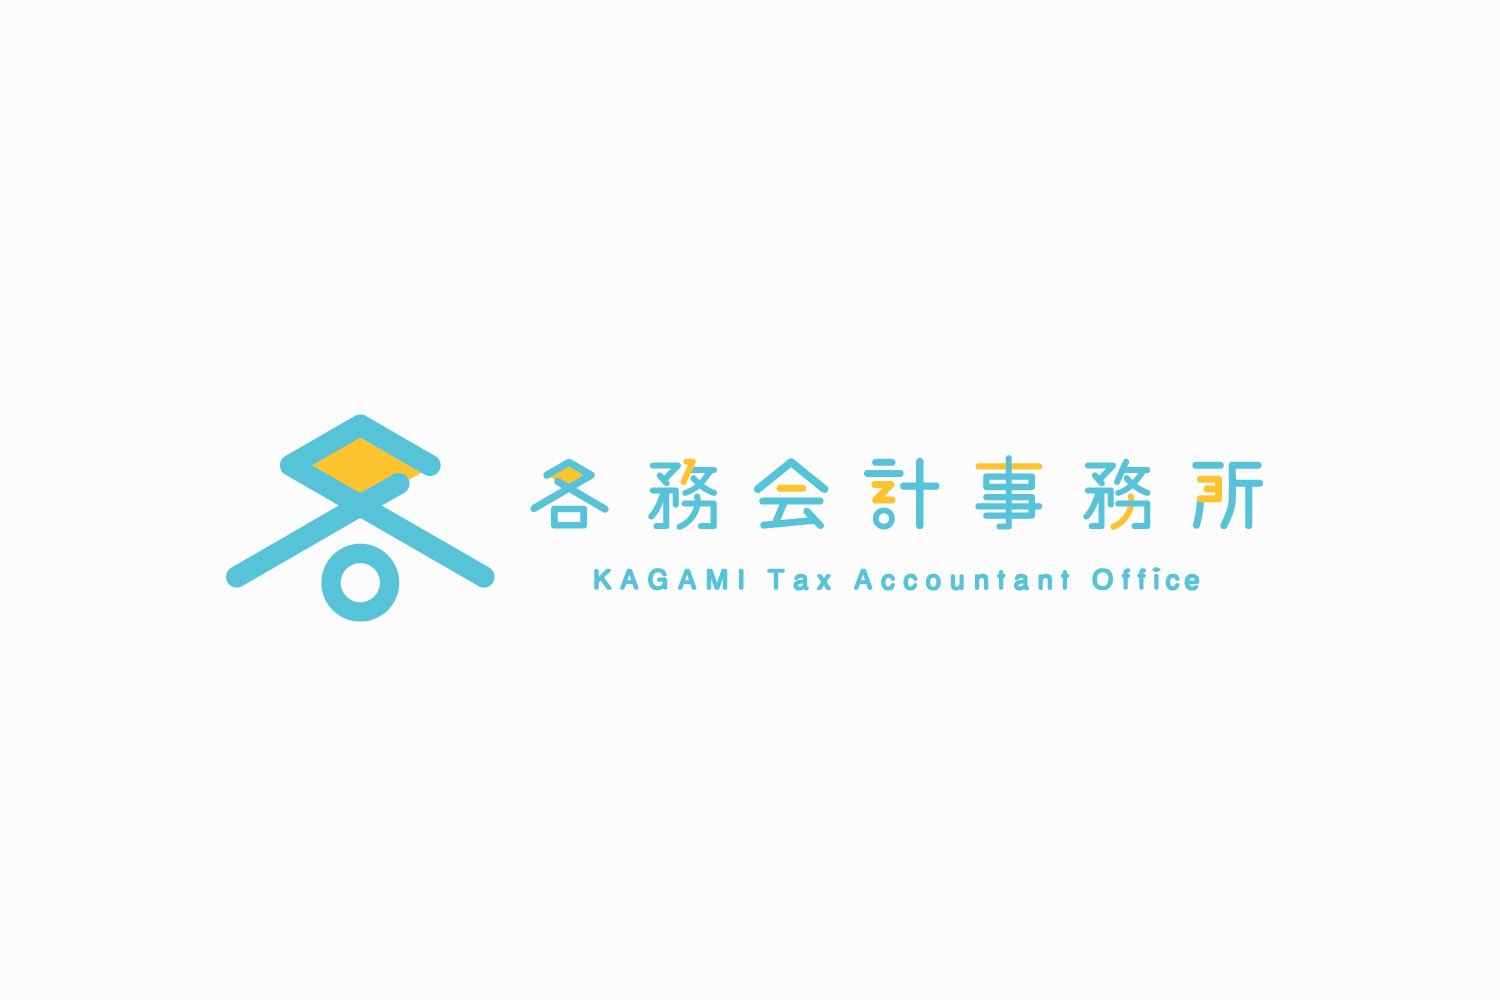 税理士事務所のロゴマークデザイン